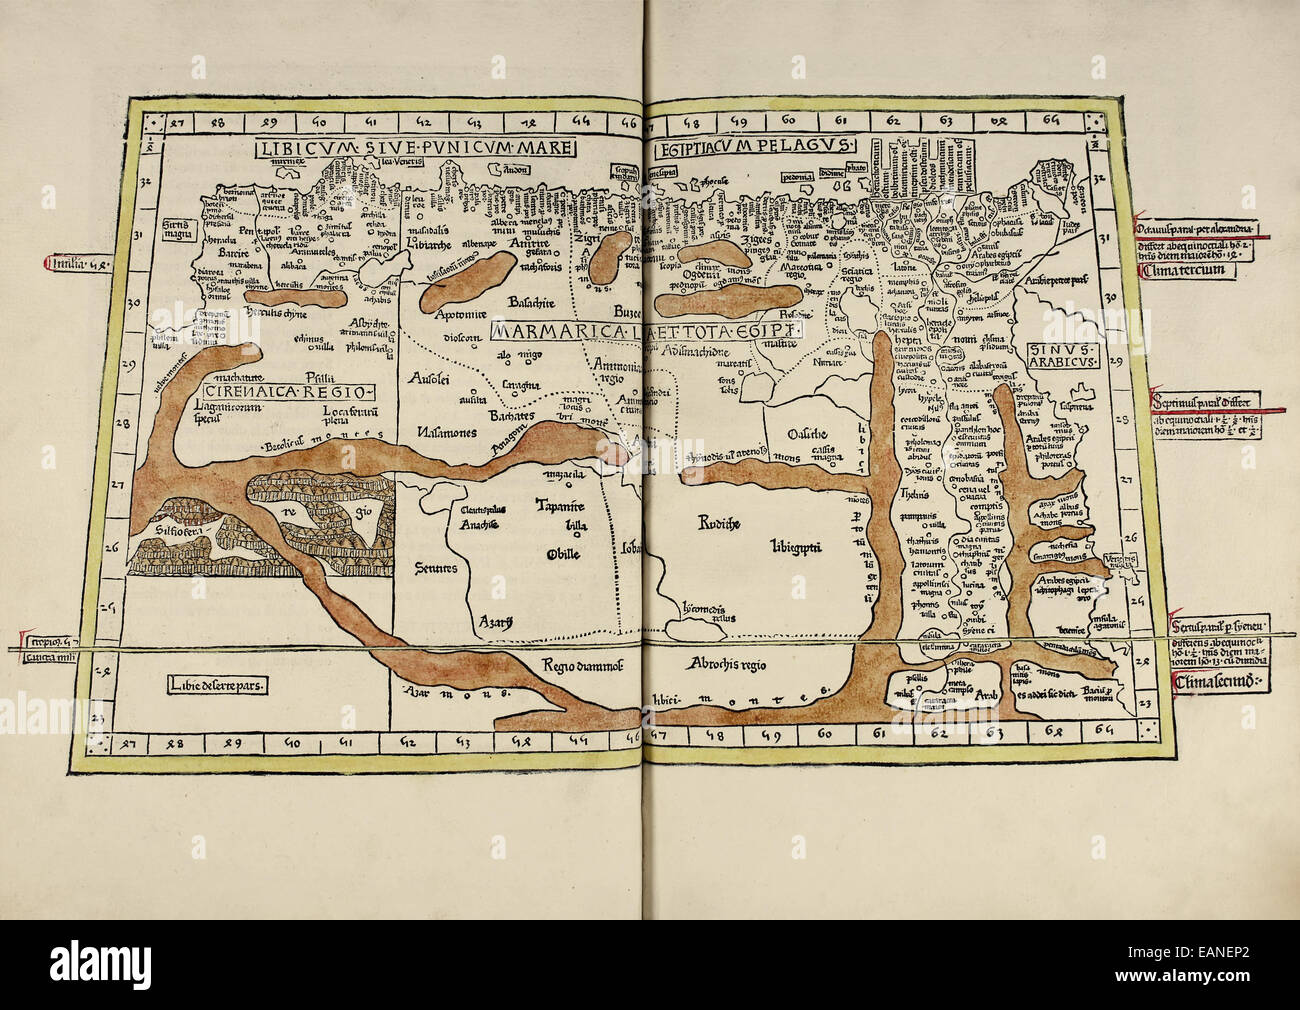 Karte von Sicca aus "Cosmographia" von Claudius Ptolemäus (Ptolemaeus) (90-168AD). Siehe Beschreibung für mehr Informationen. Stockfoto